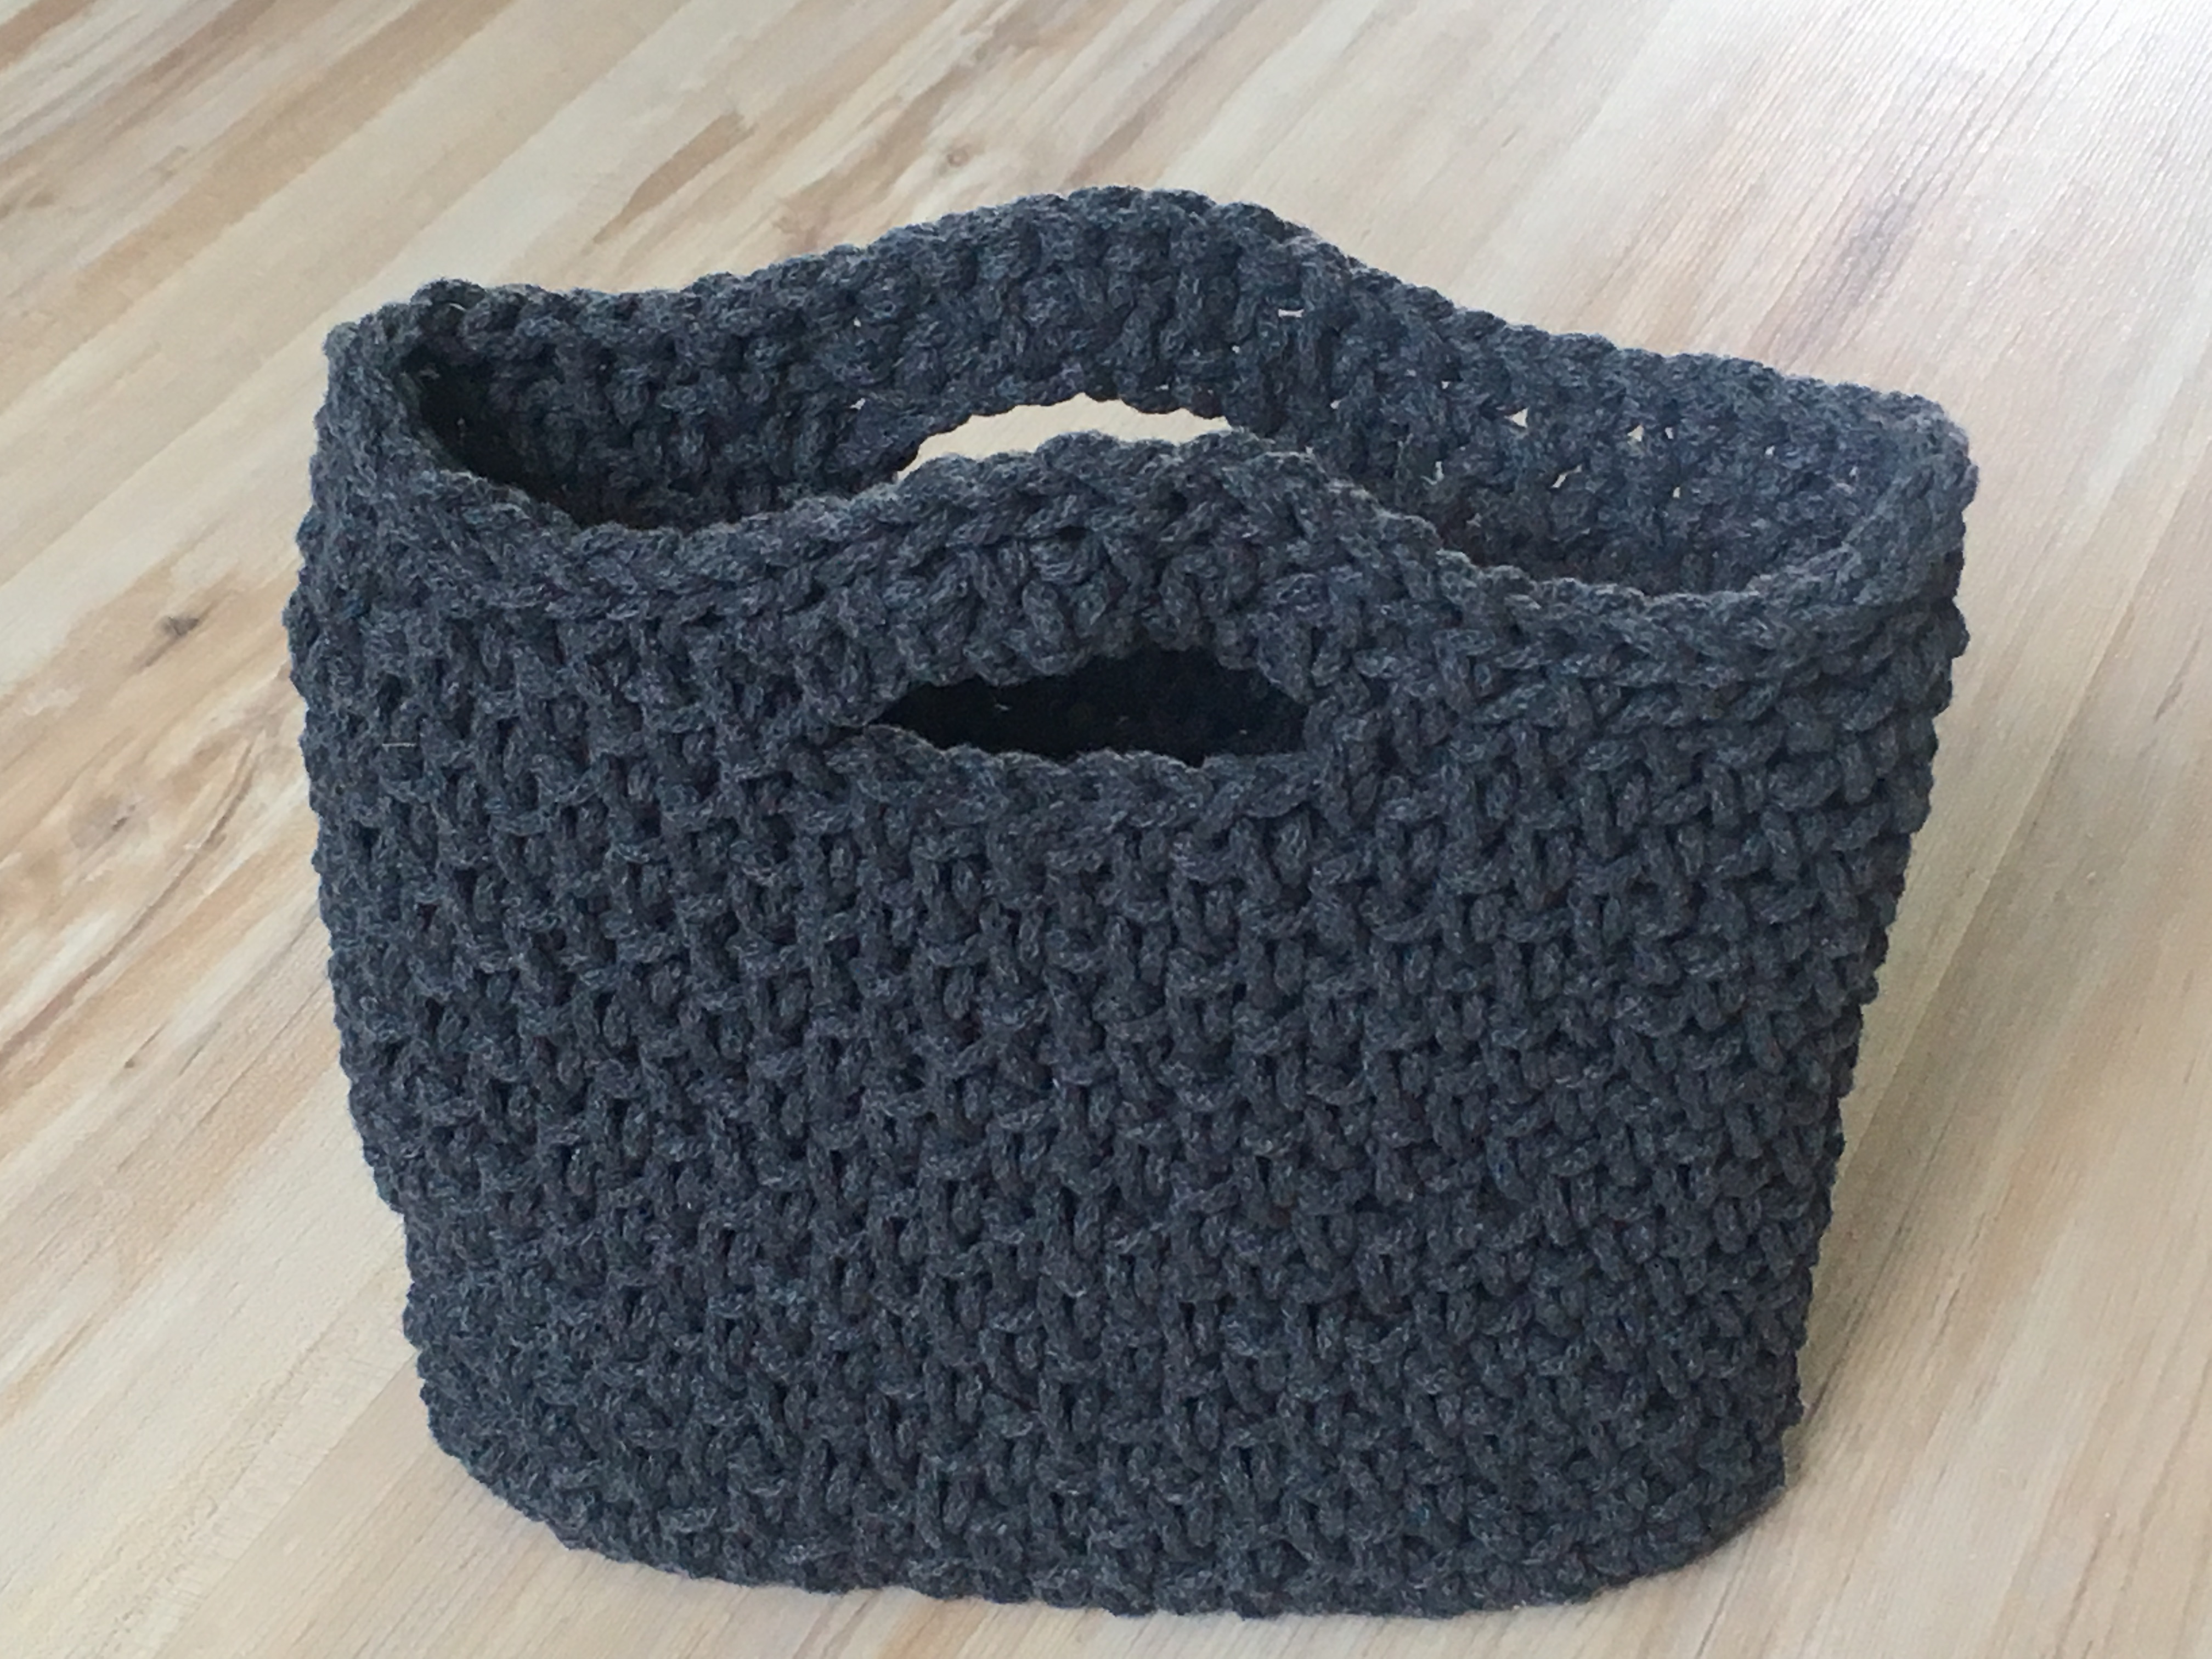 crochet handbag